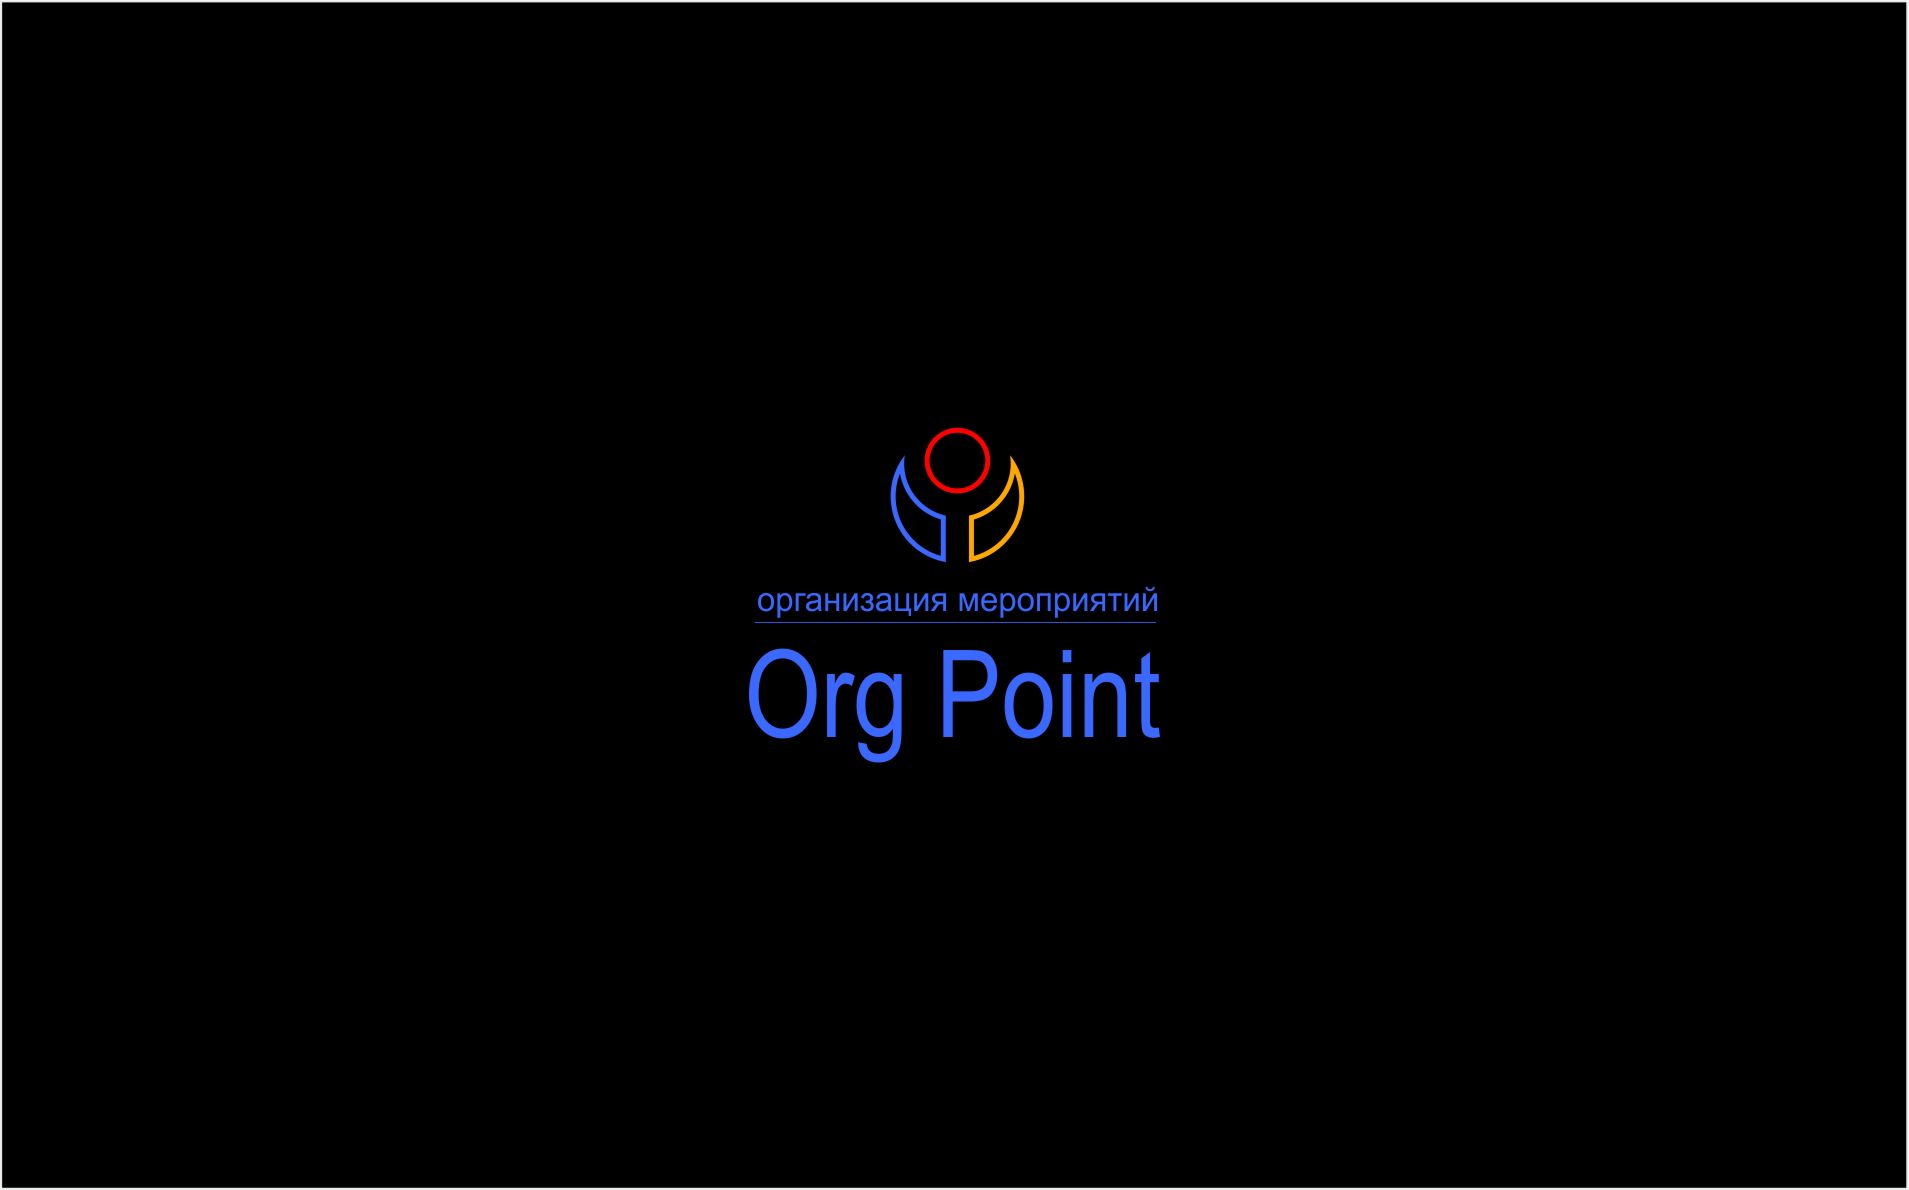 Логотип для Орг Поинт Org Point   - дизайнер SobolevS21